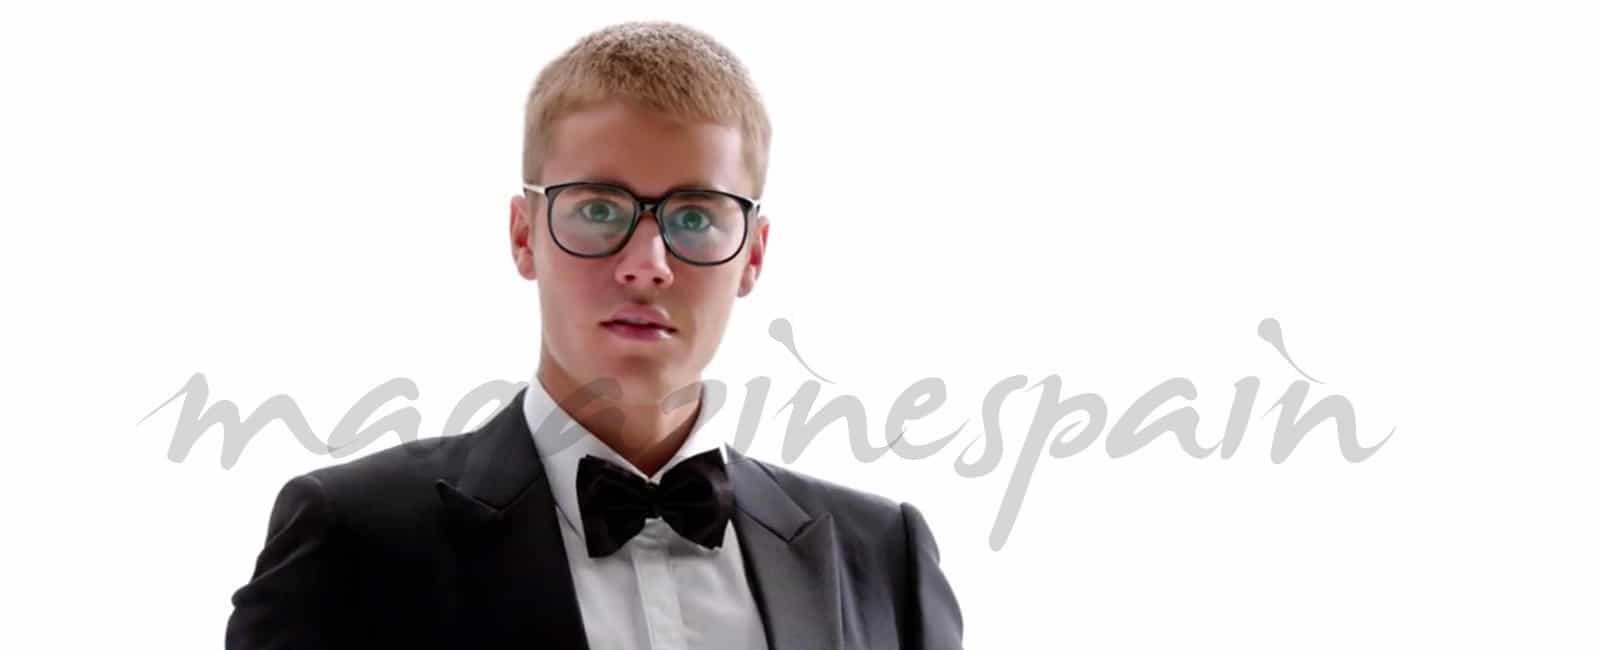 El simpático baile de Justin Bieber con gafas, traje y pajarita